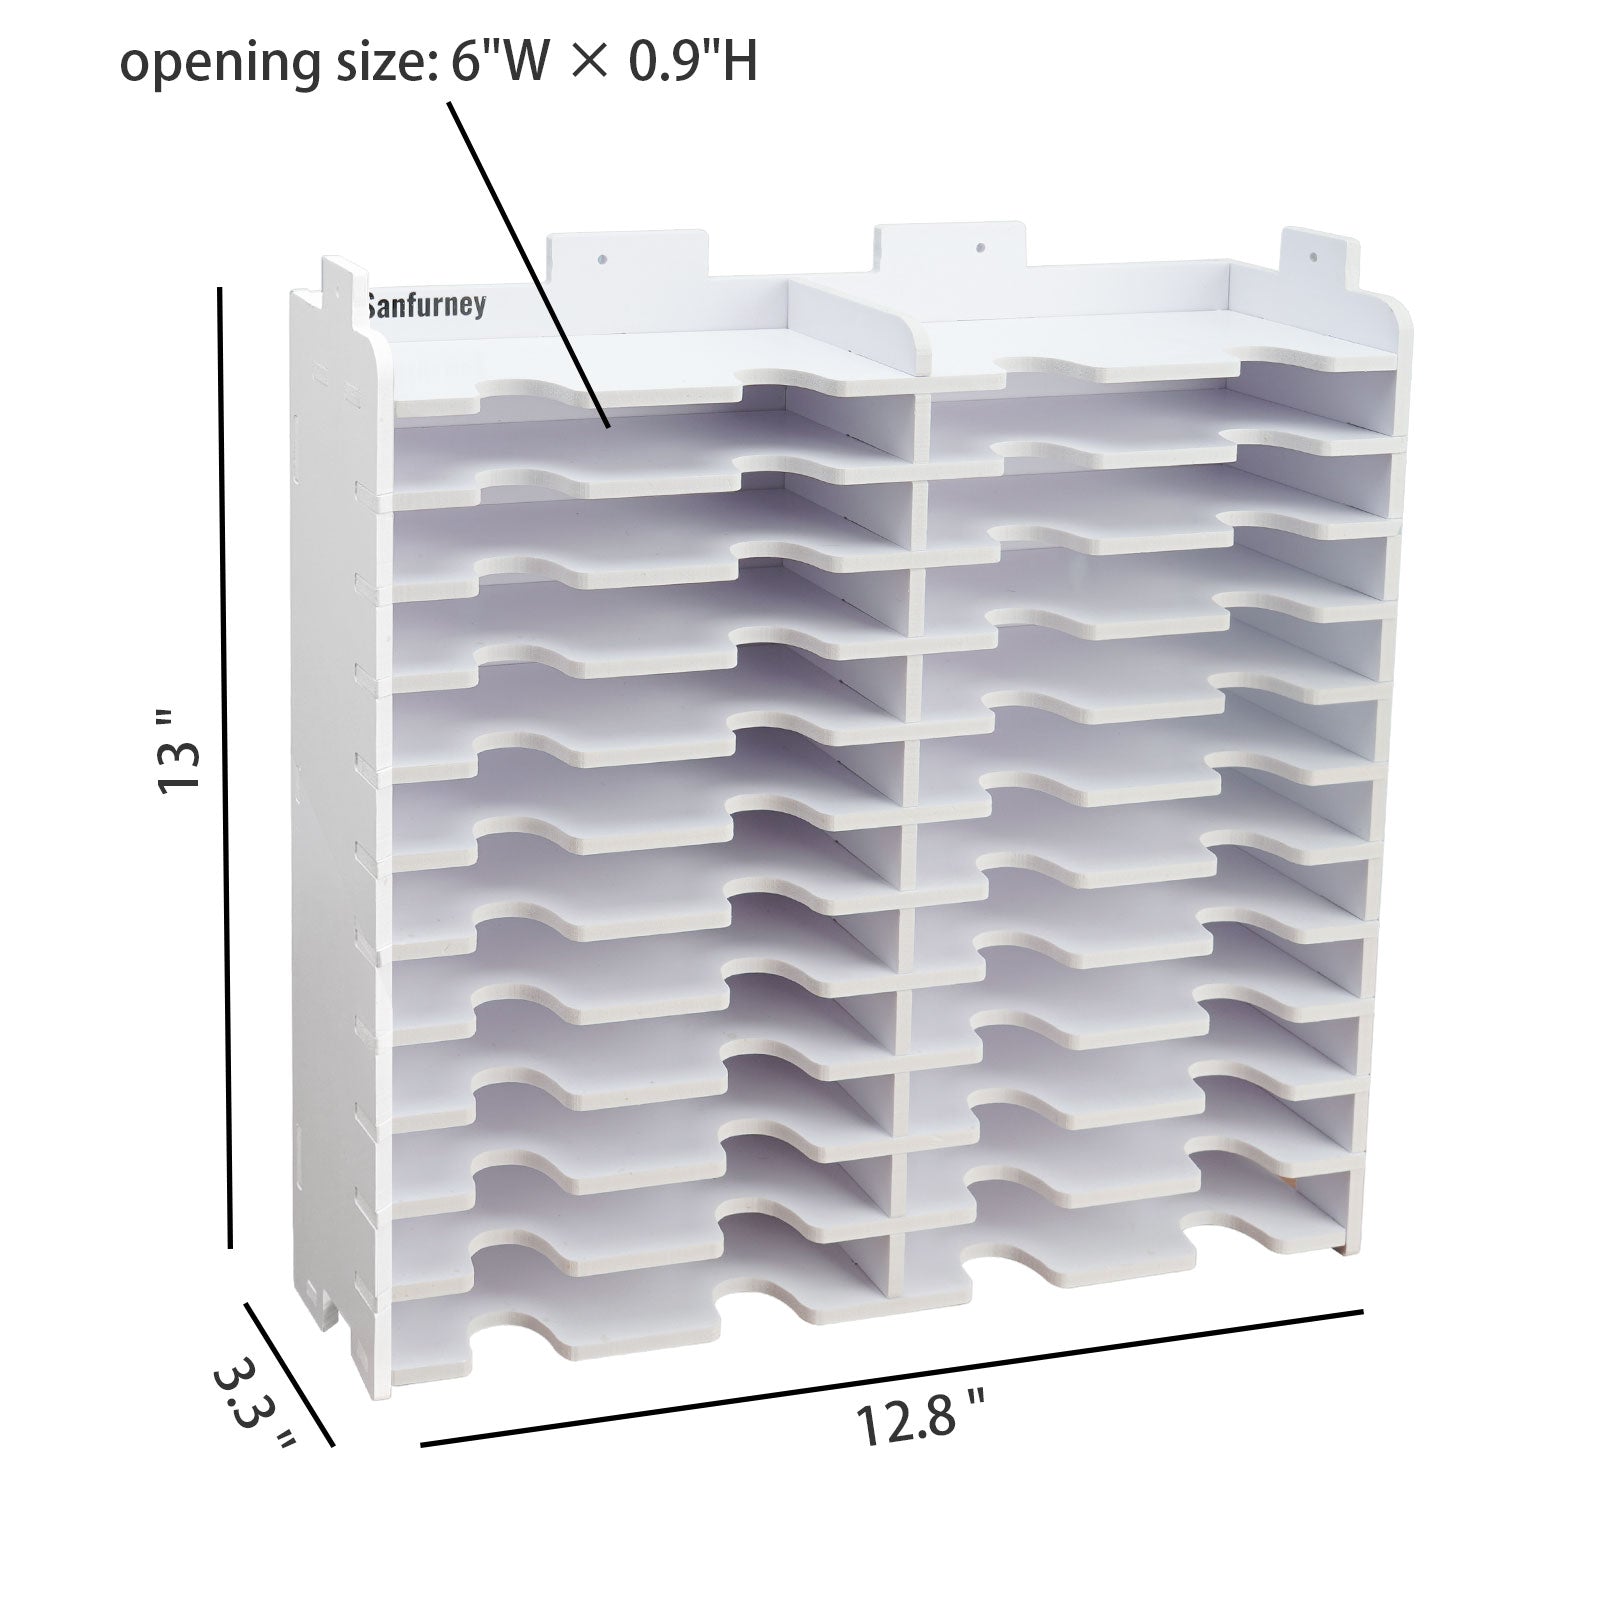 Diamond Painting Trays Storage Rack Series – Sanfurney